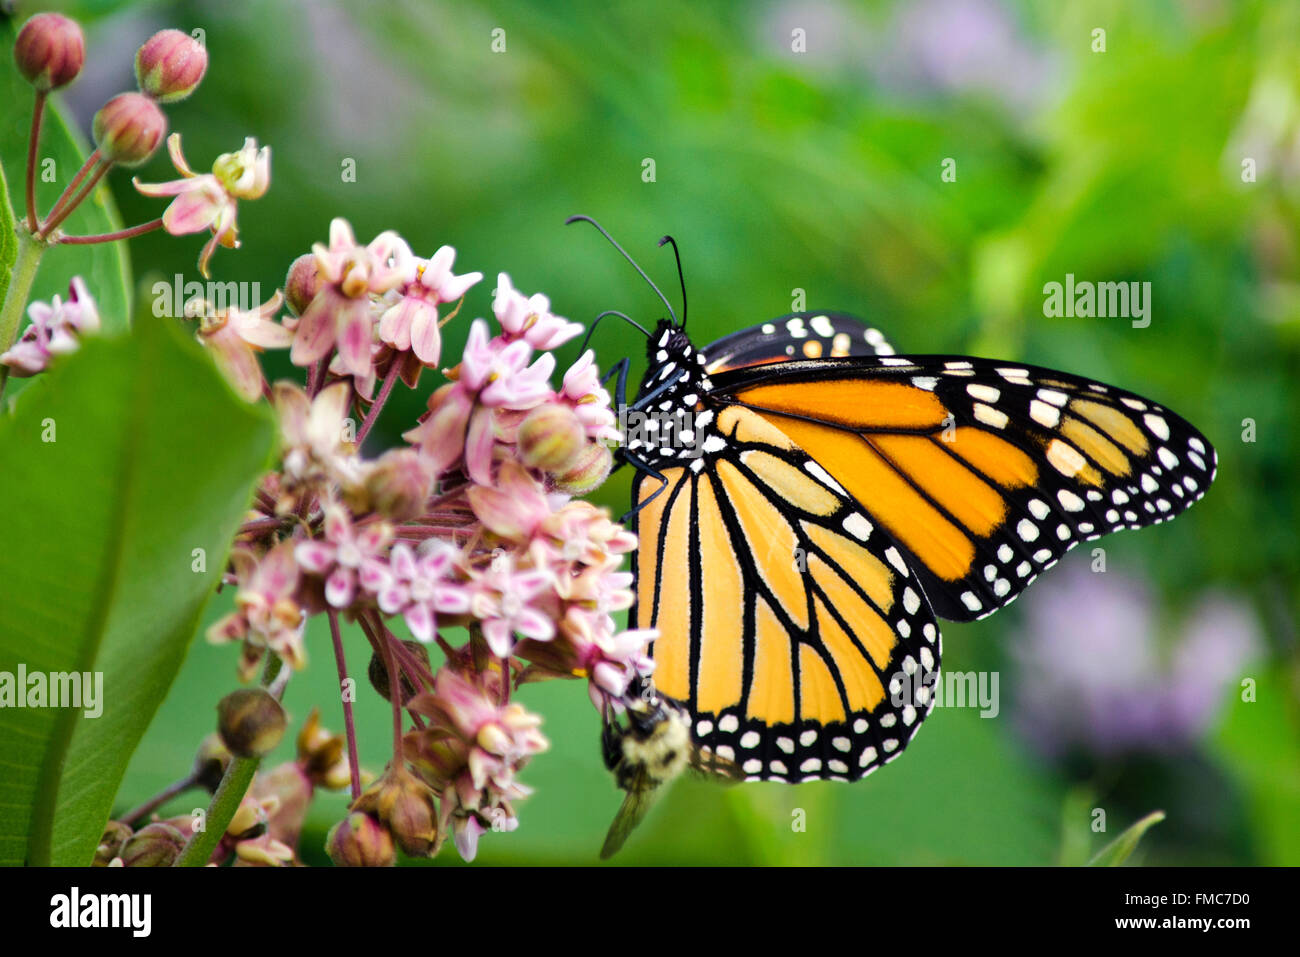 Mariposa Monarca con alas cerradas alimentándose de Asclepias flores en el jardín de verano. Foto de stock